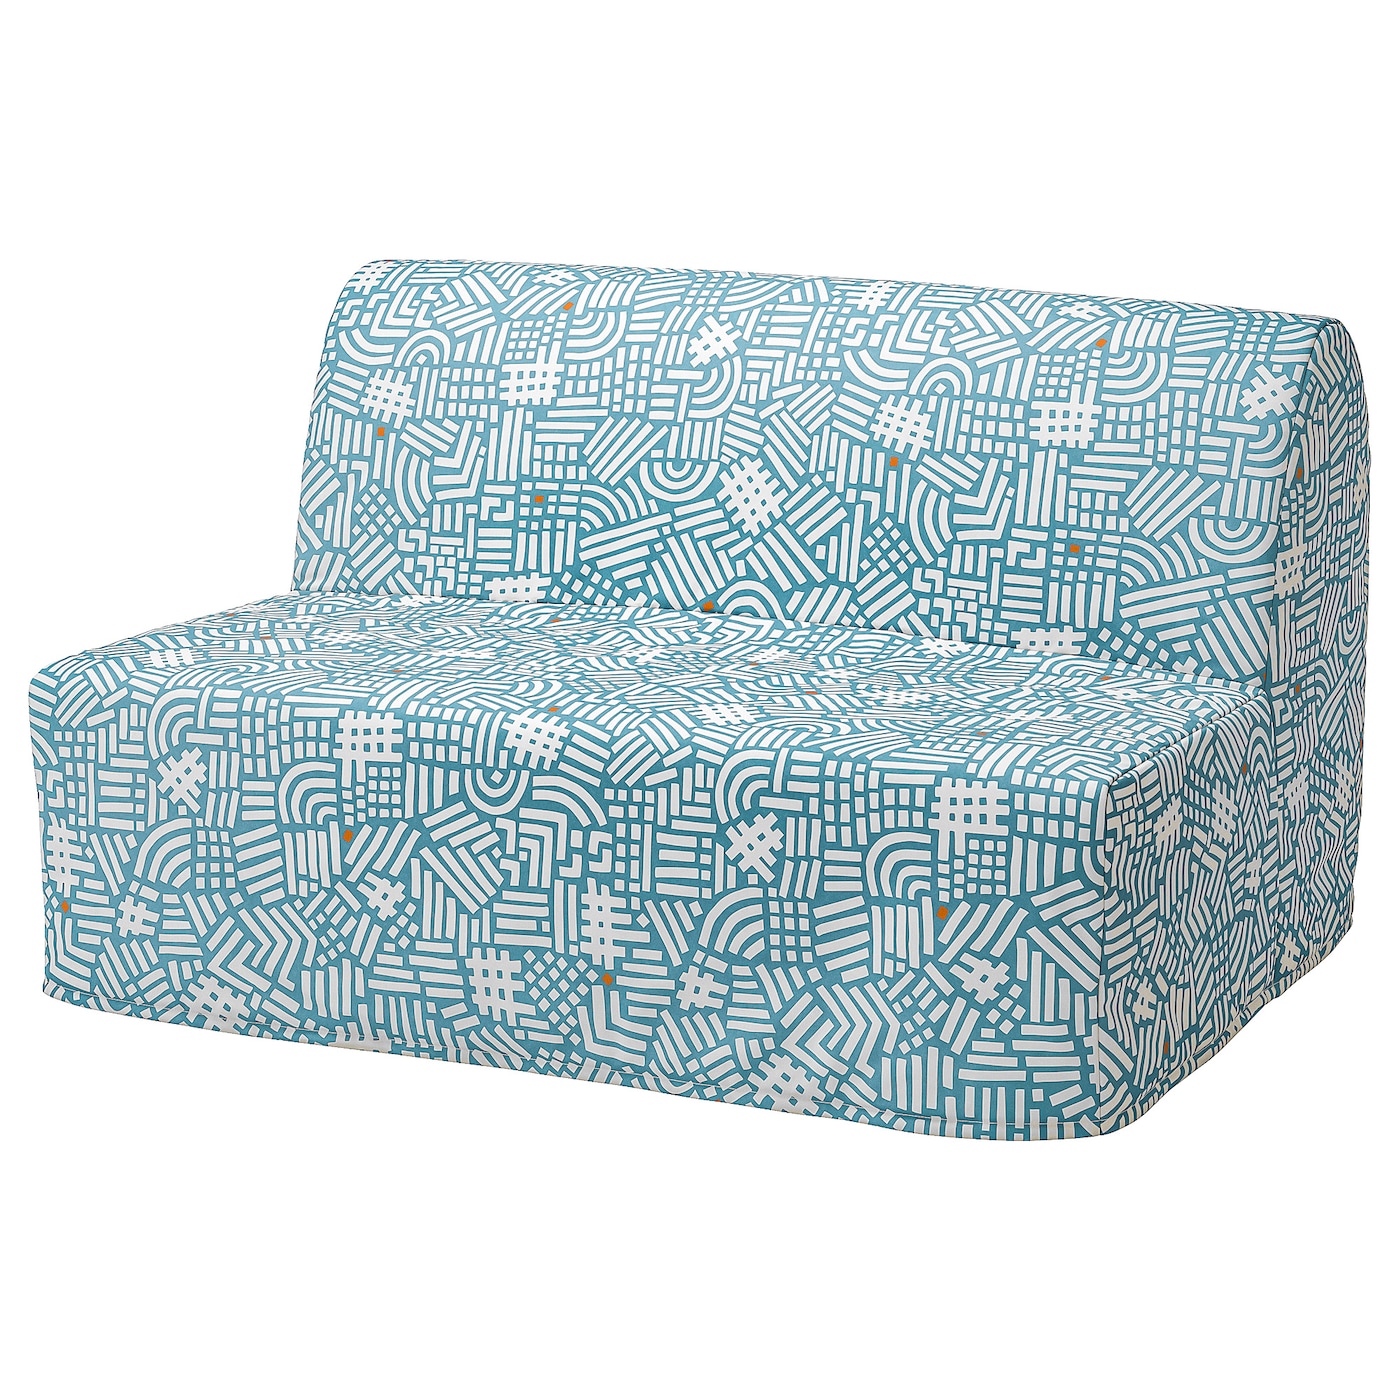 ЛИКСЕЛЕ ЛЕВОС 2 дивана-кровати с откидной спинкой, Тутстад разноцветный LYCKSELE LÖVÅS IKEA